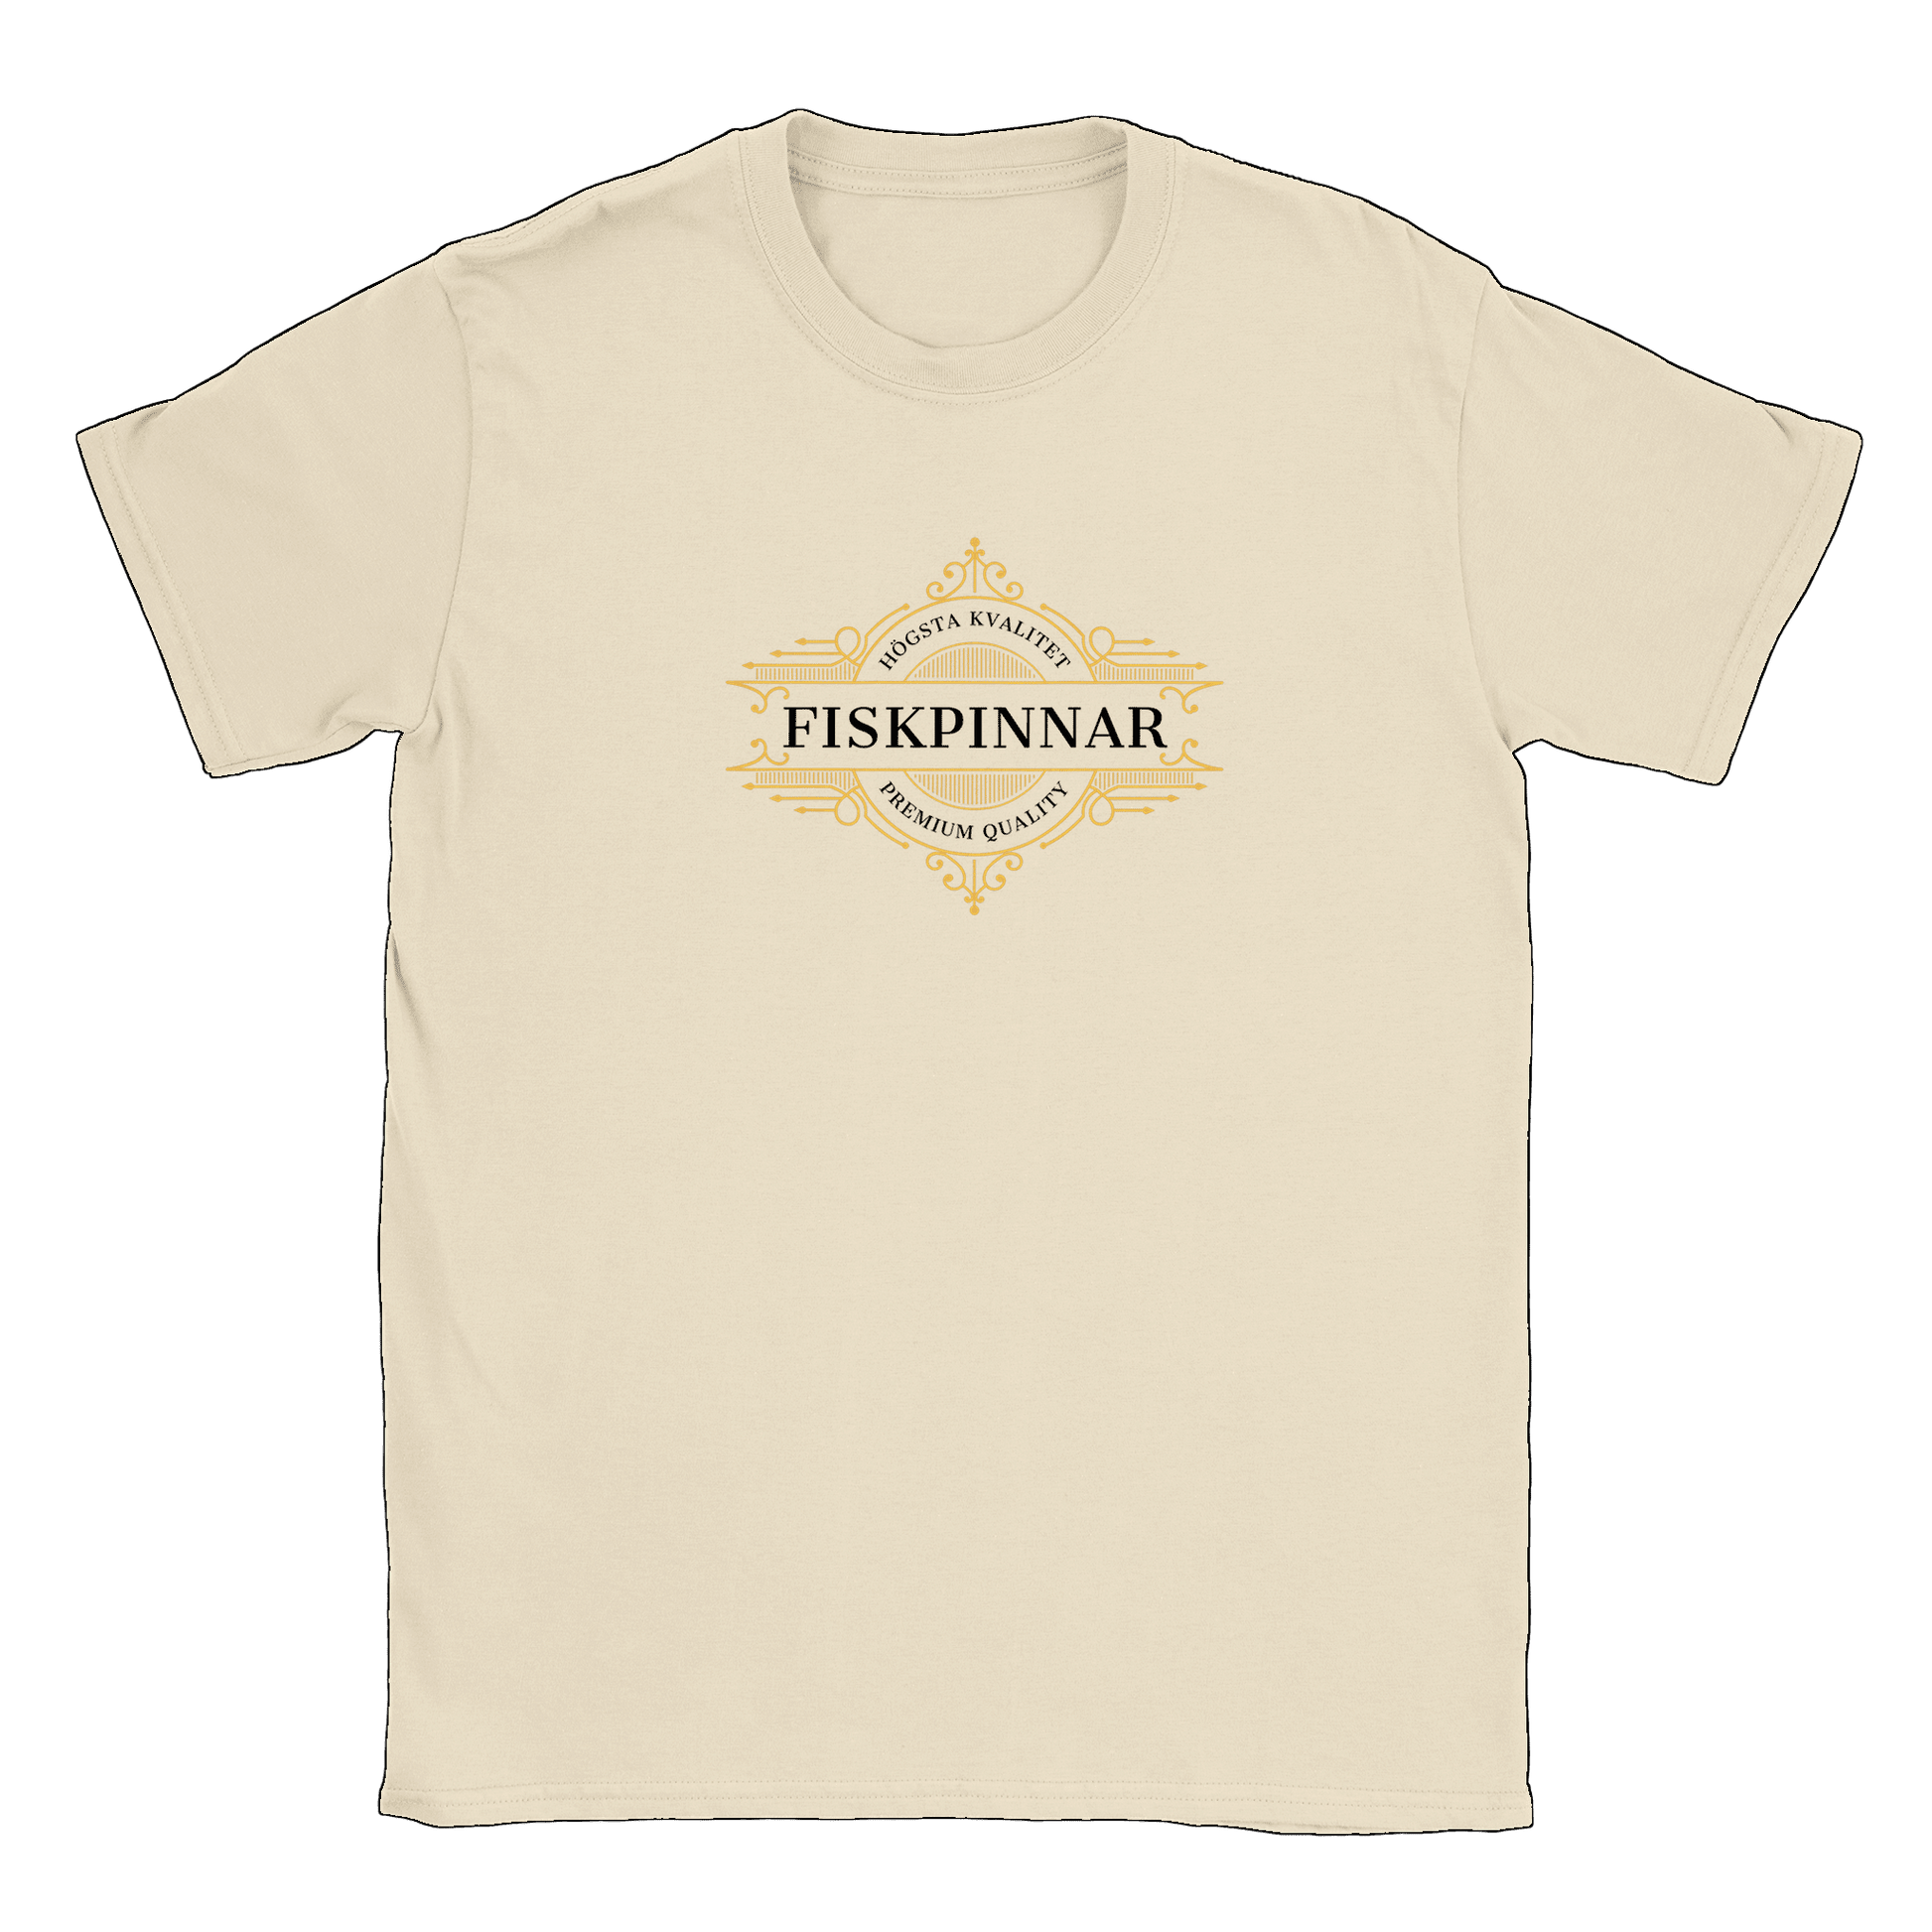 Fiskpinnar - T-shirt Natural